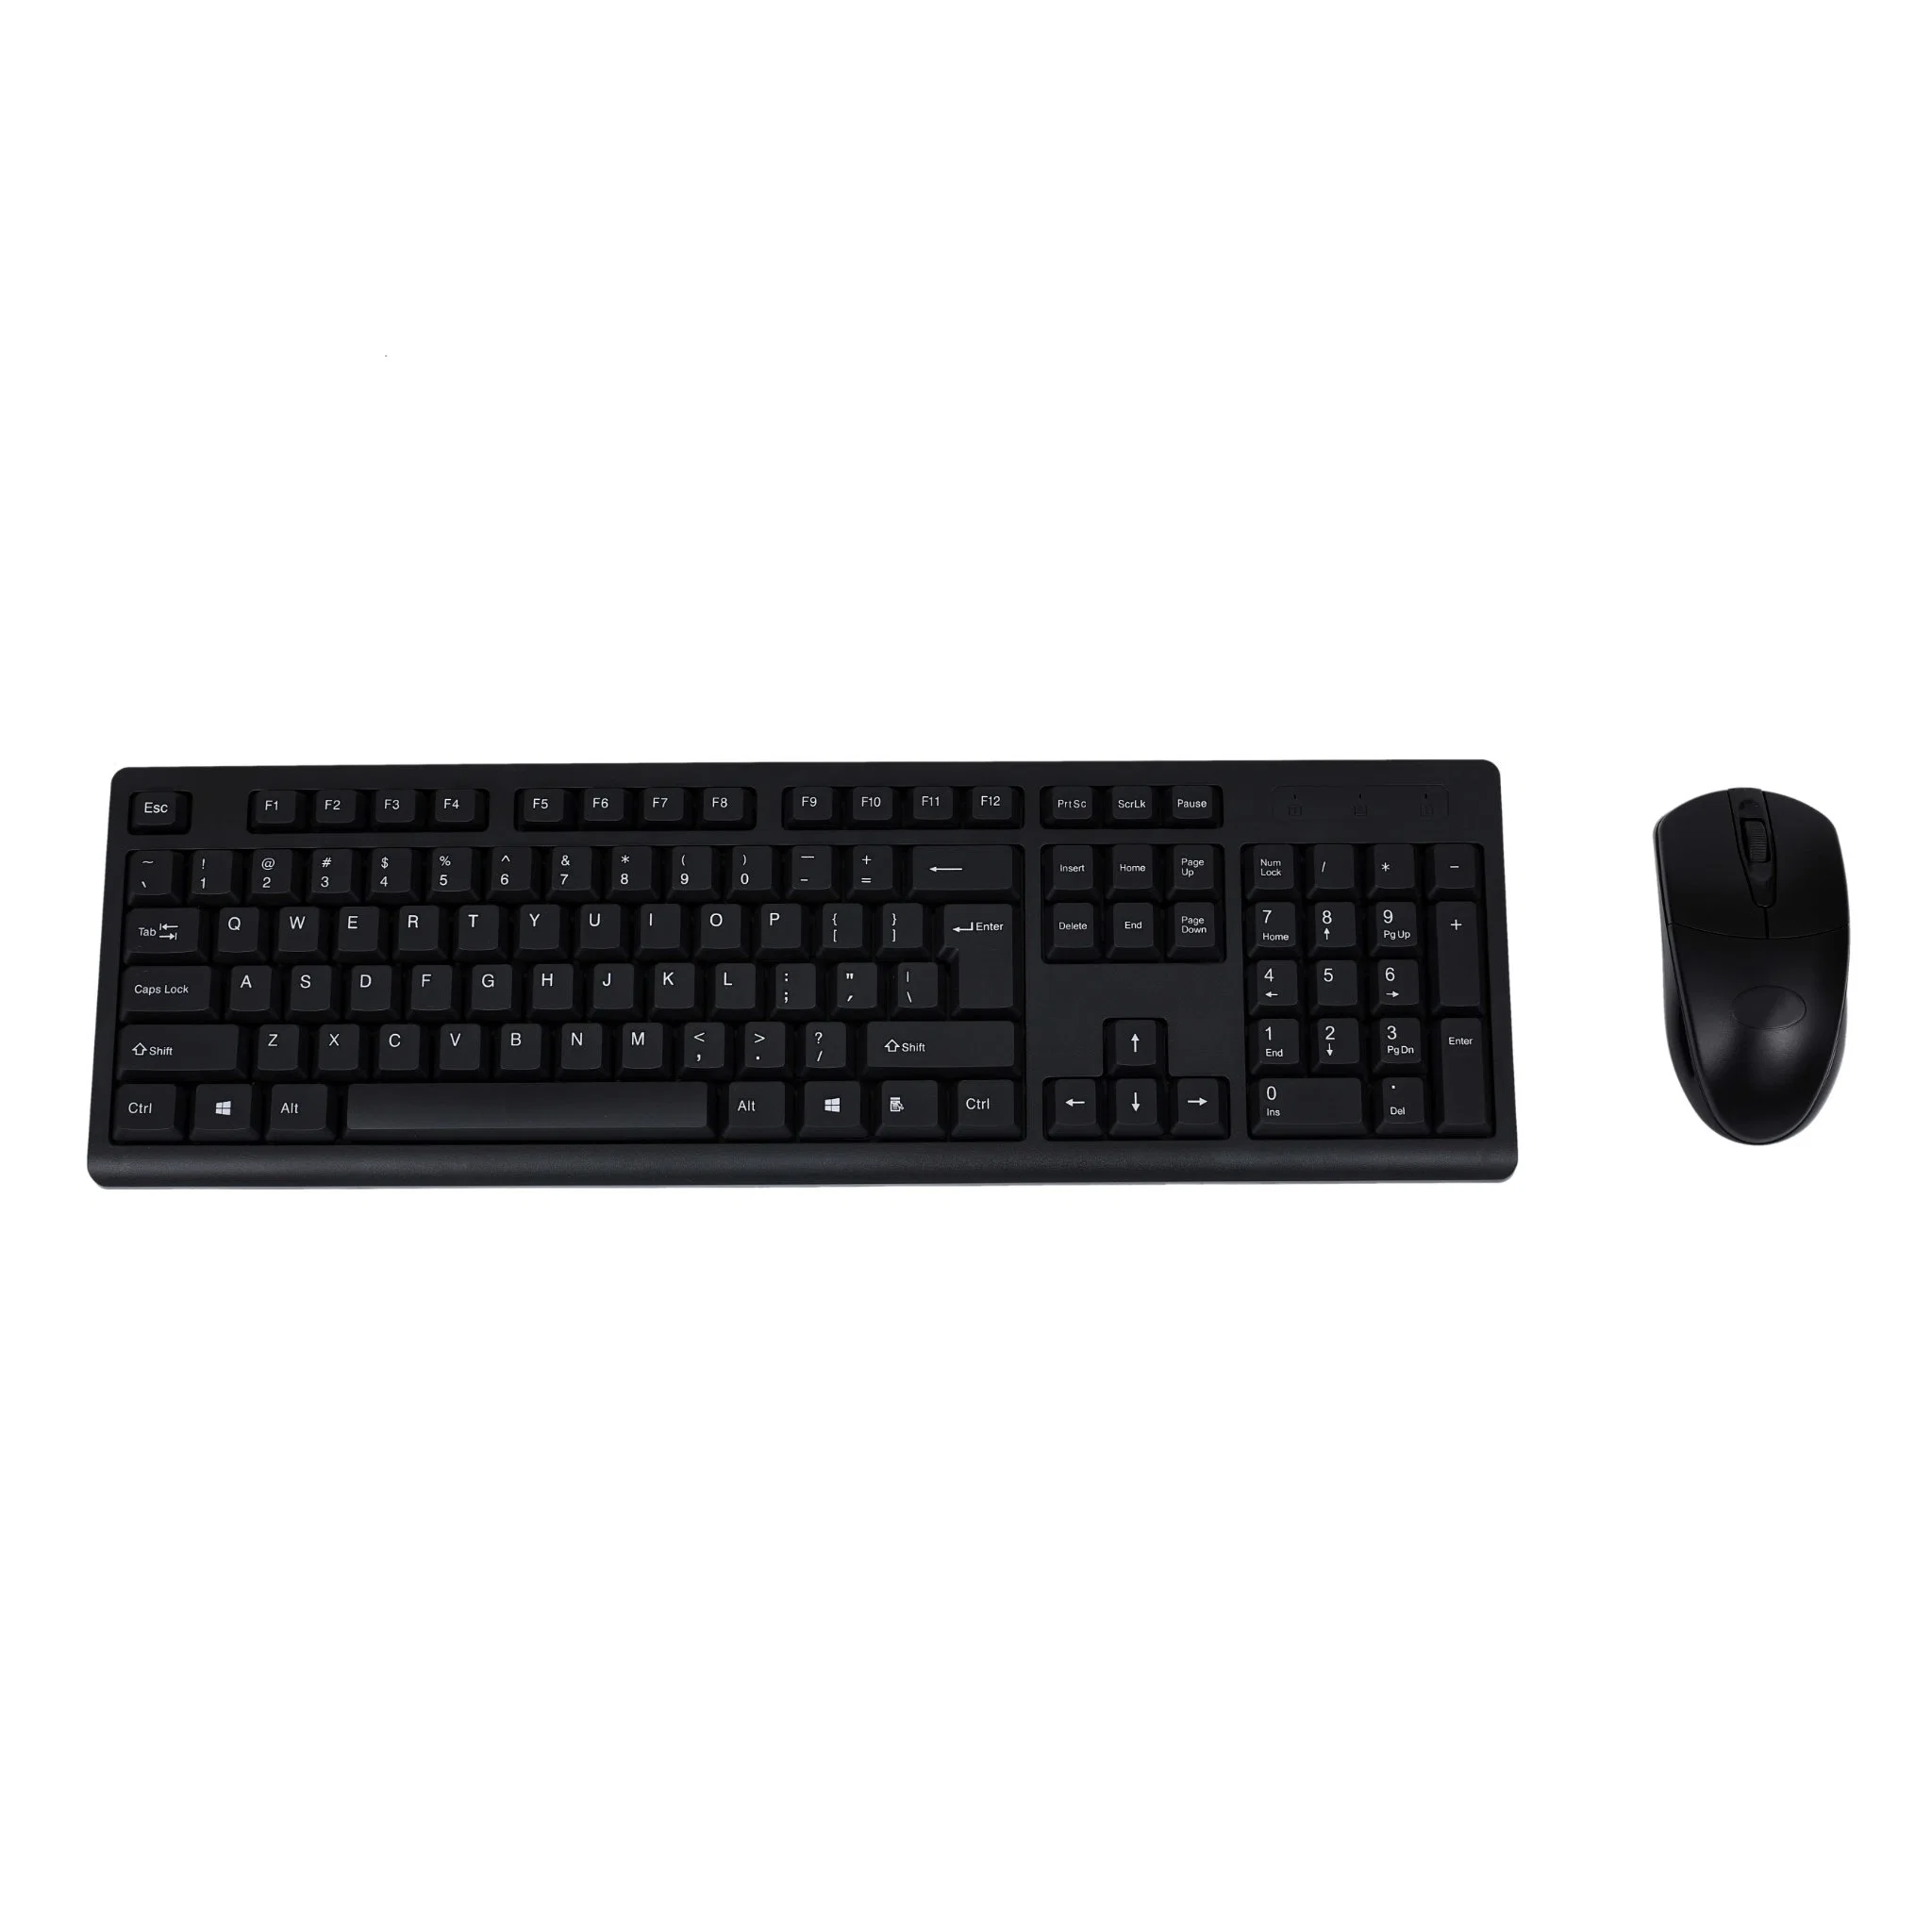 Wf006 проводной офисная и домашняя клавиатура и мышь набор с OEM ODM